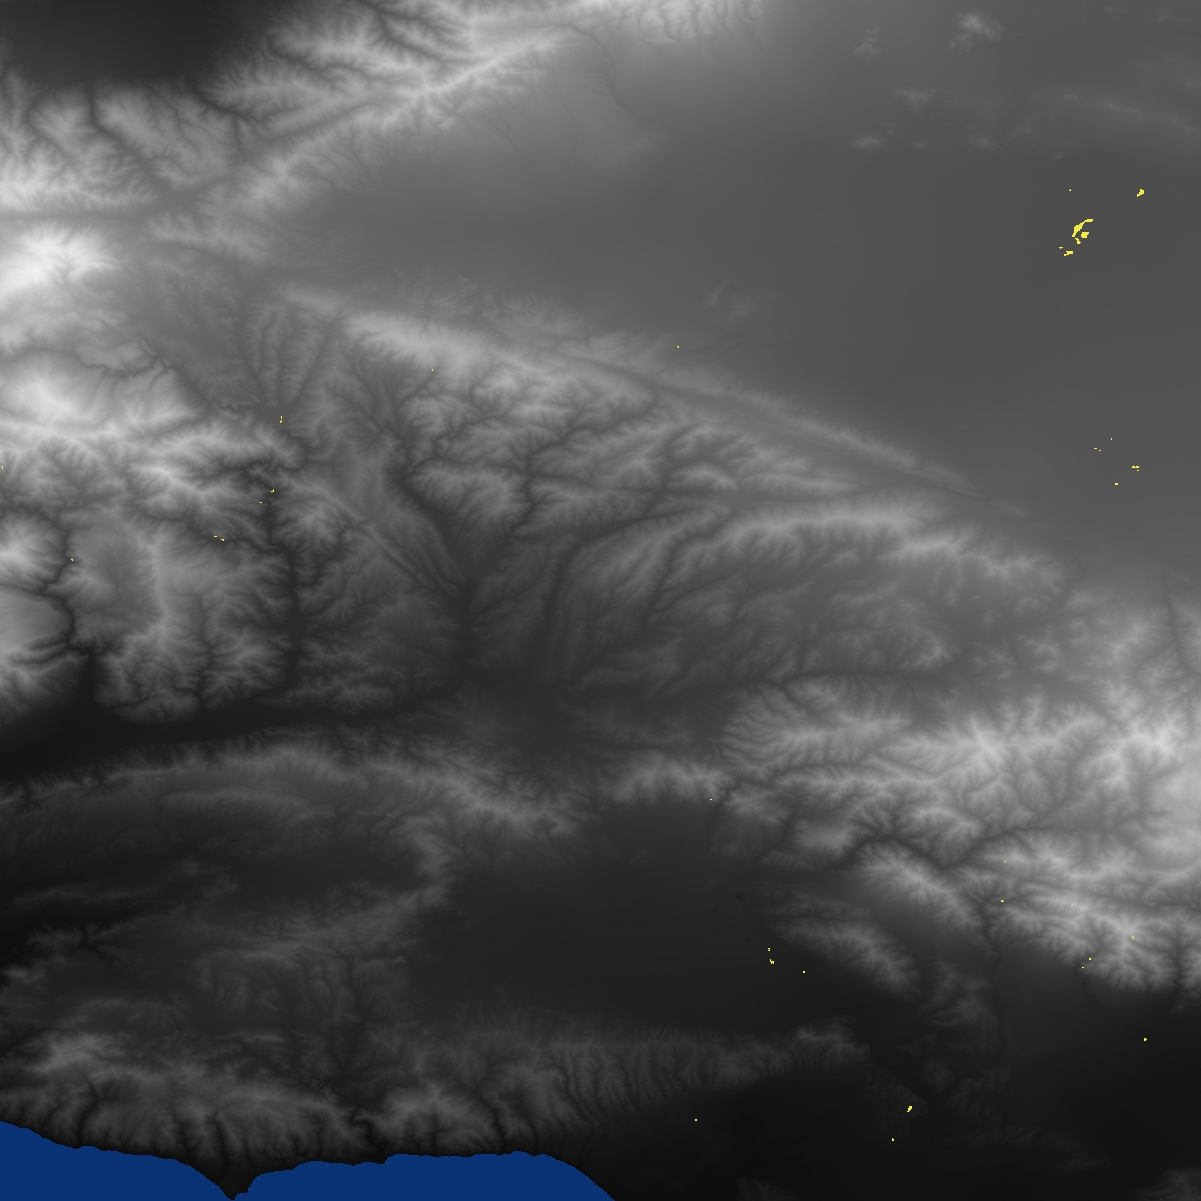 Los Angeles Valley DEM (Digital Elevation Model) using SRTM3 data from NASA